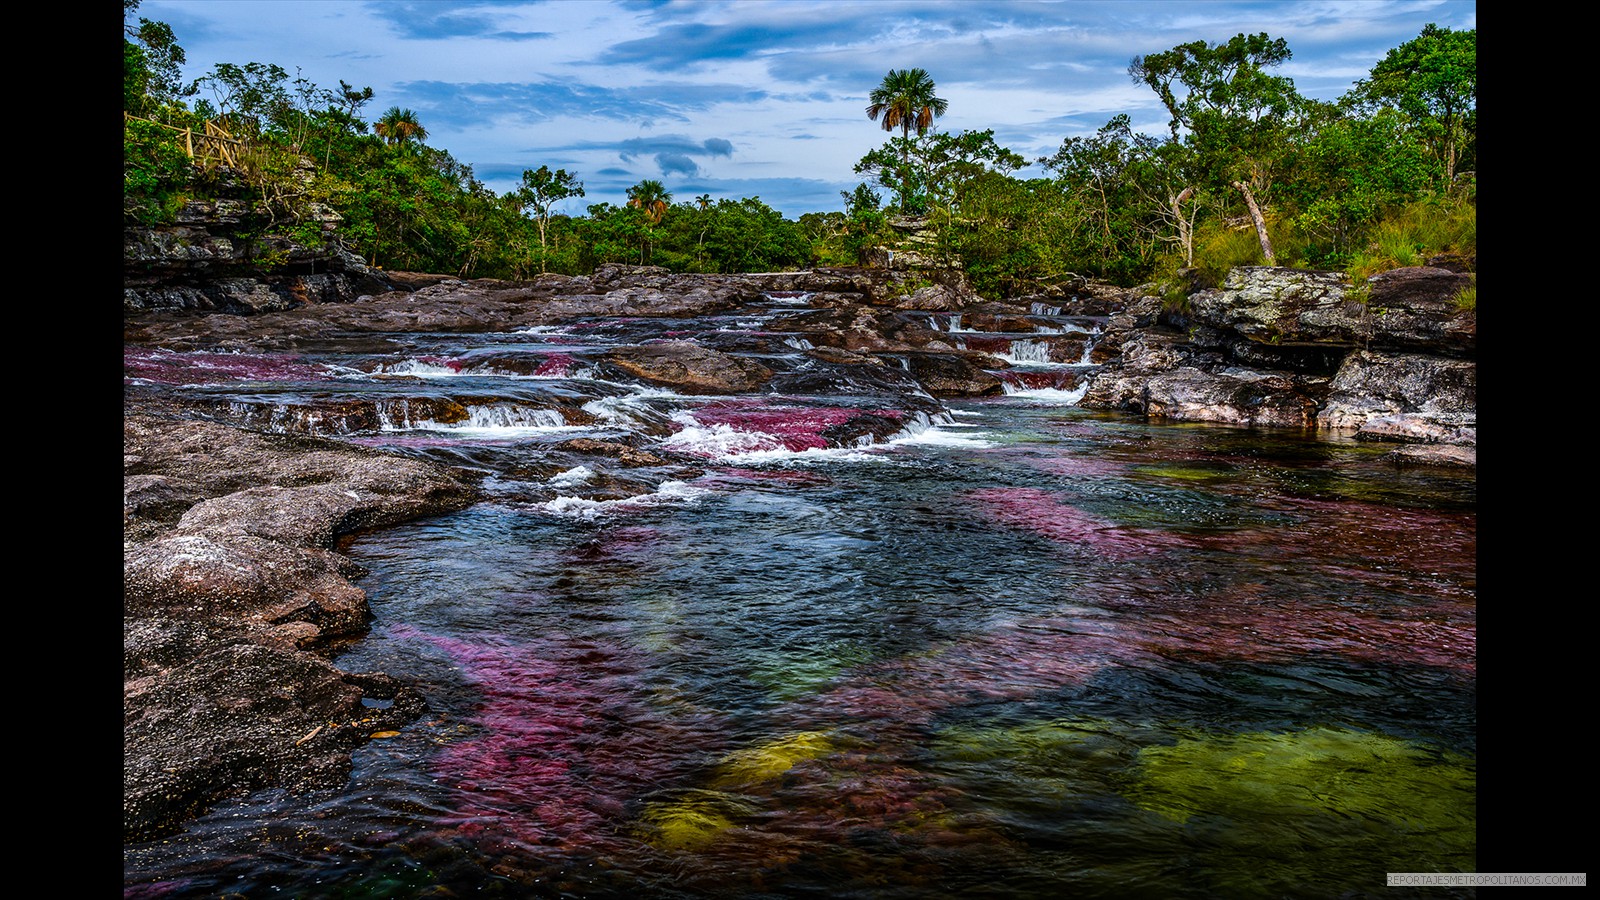  Río arcoiris o río de los cinco colores es en Colombia uno de los lugares más hermosos